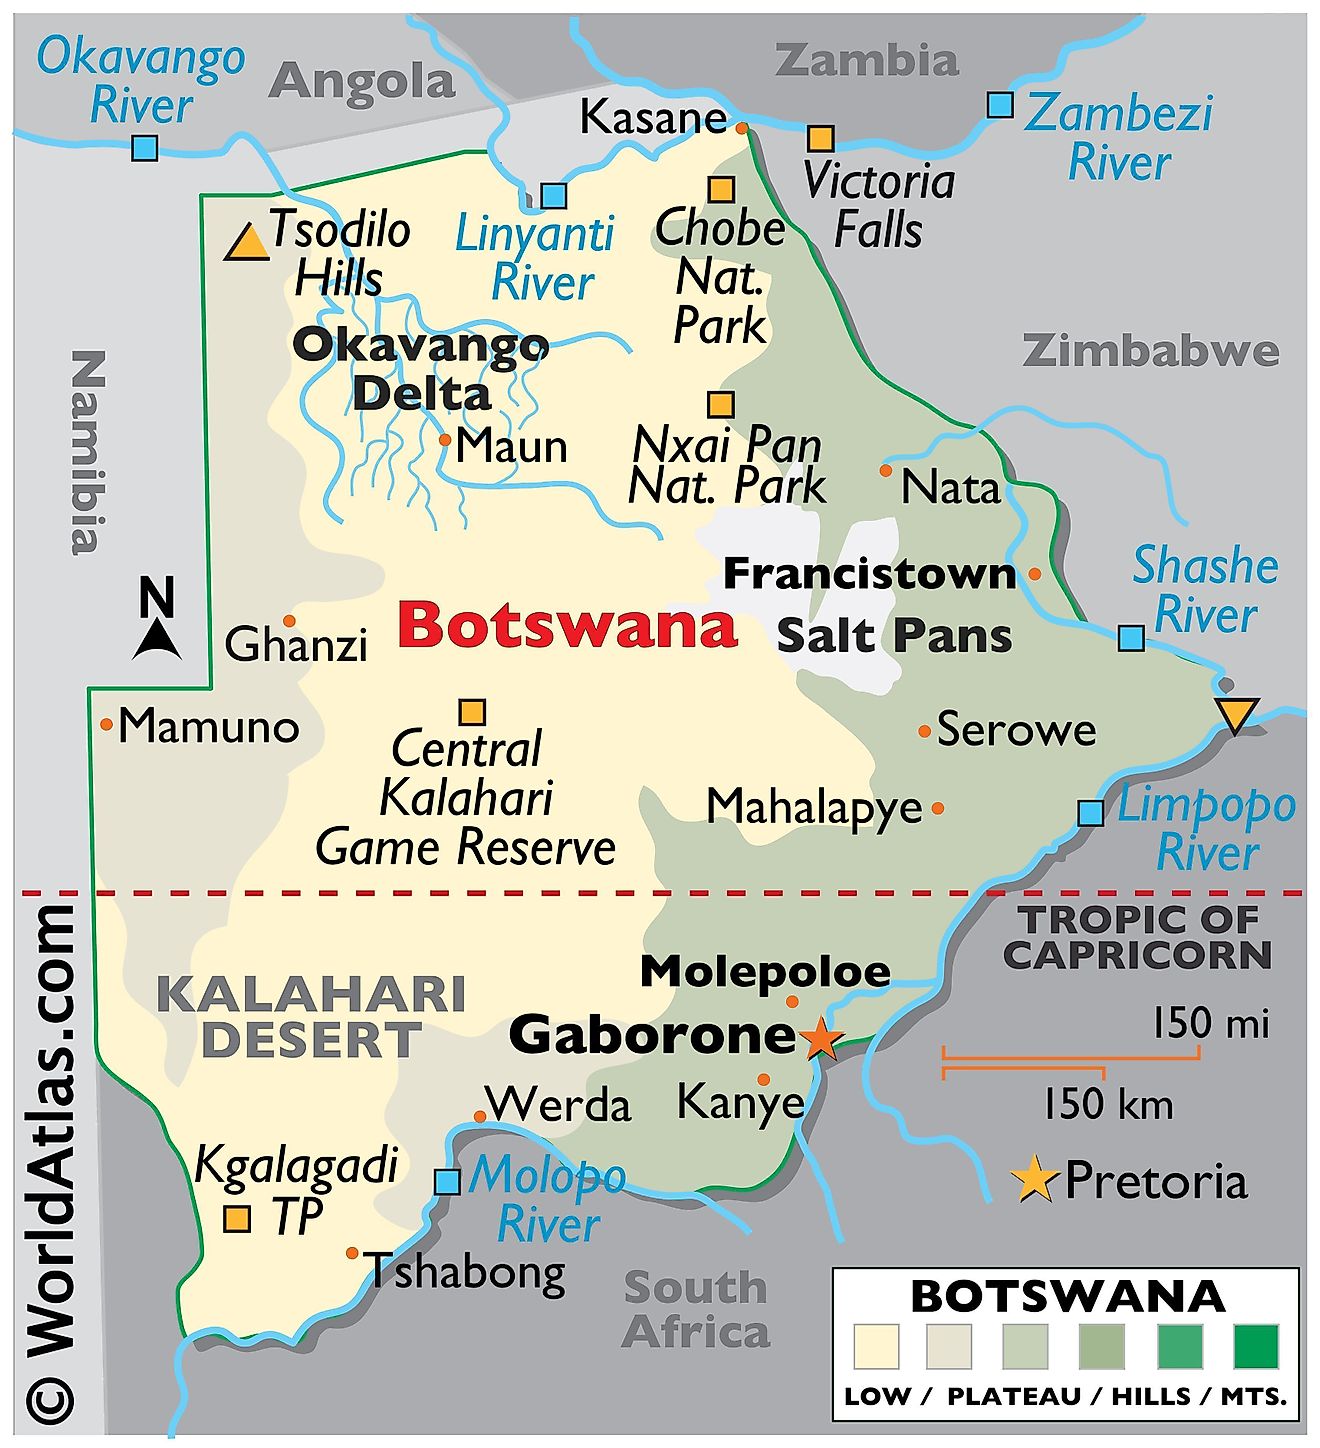 Mapa físico de Botswana con límites estatales. El mapa también muestra las características físicas de Botswana, incluido el relieve, los principales ríos y lagos, el delta del Okavango, los puntos extremos, el área desértica y las principales ciudades.